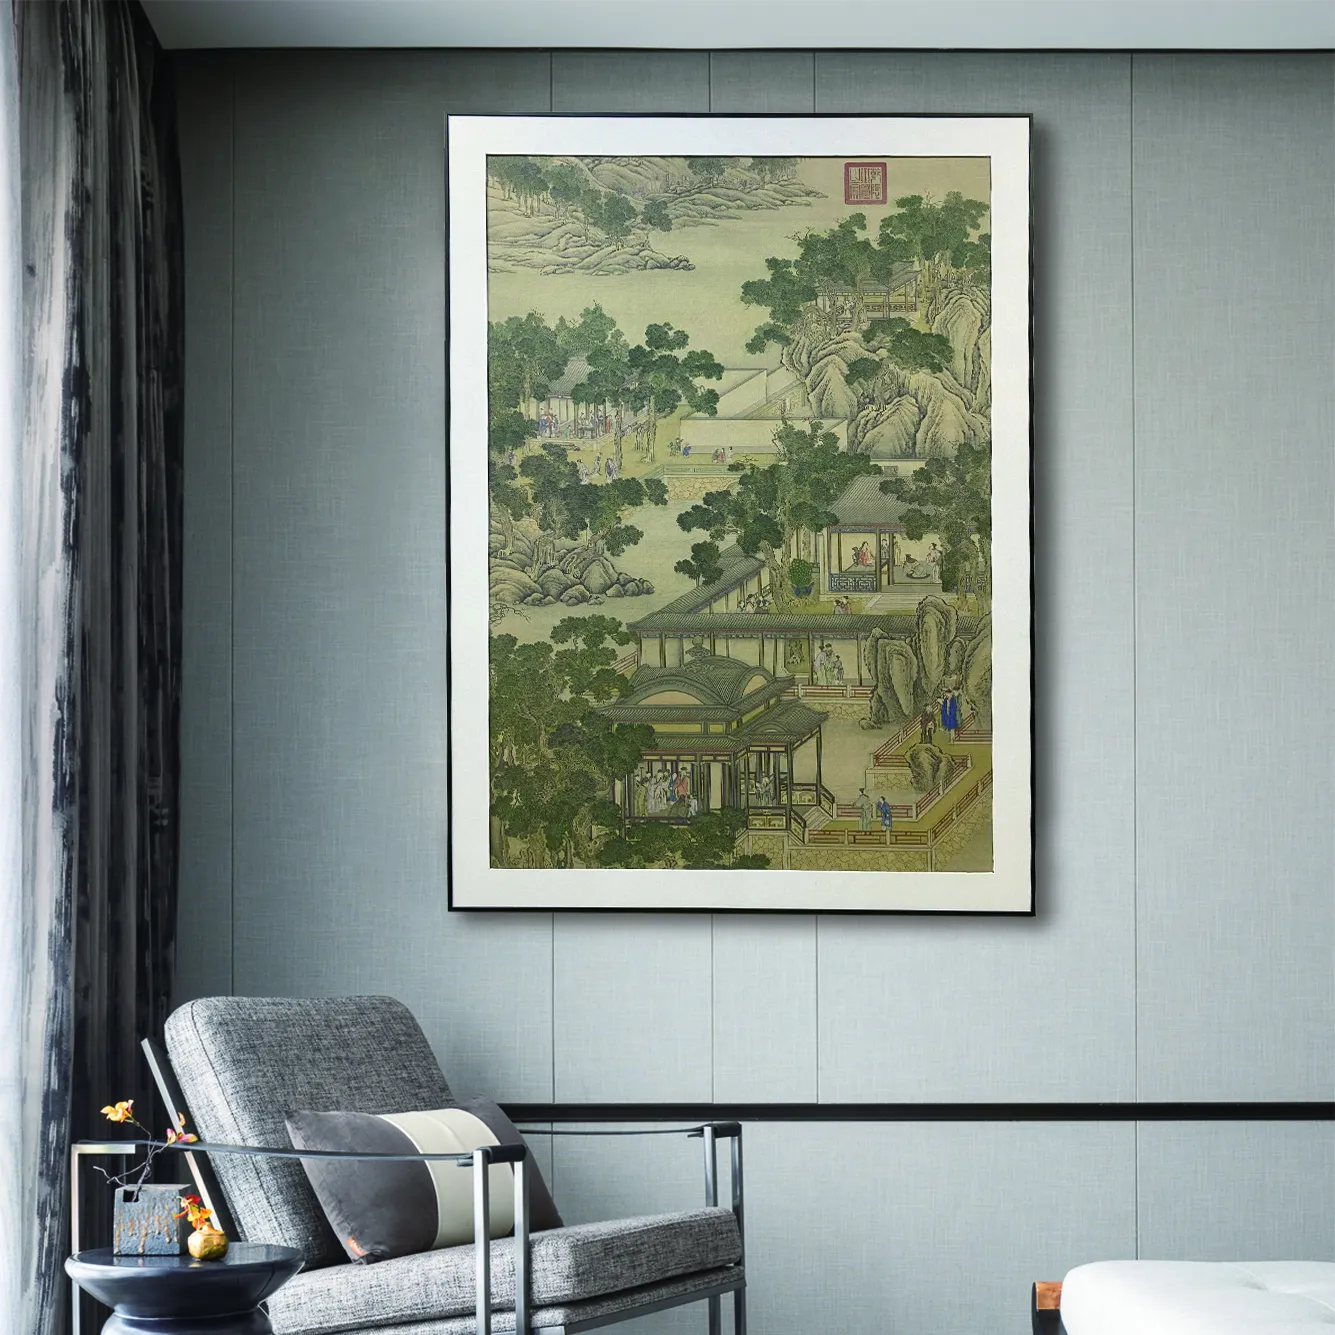 Pintura artística de estilo chino antiguo paisaje pintura larga marco de metal pintura decorativa